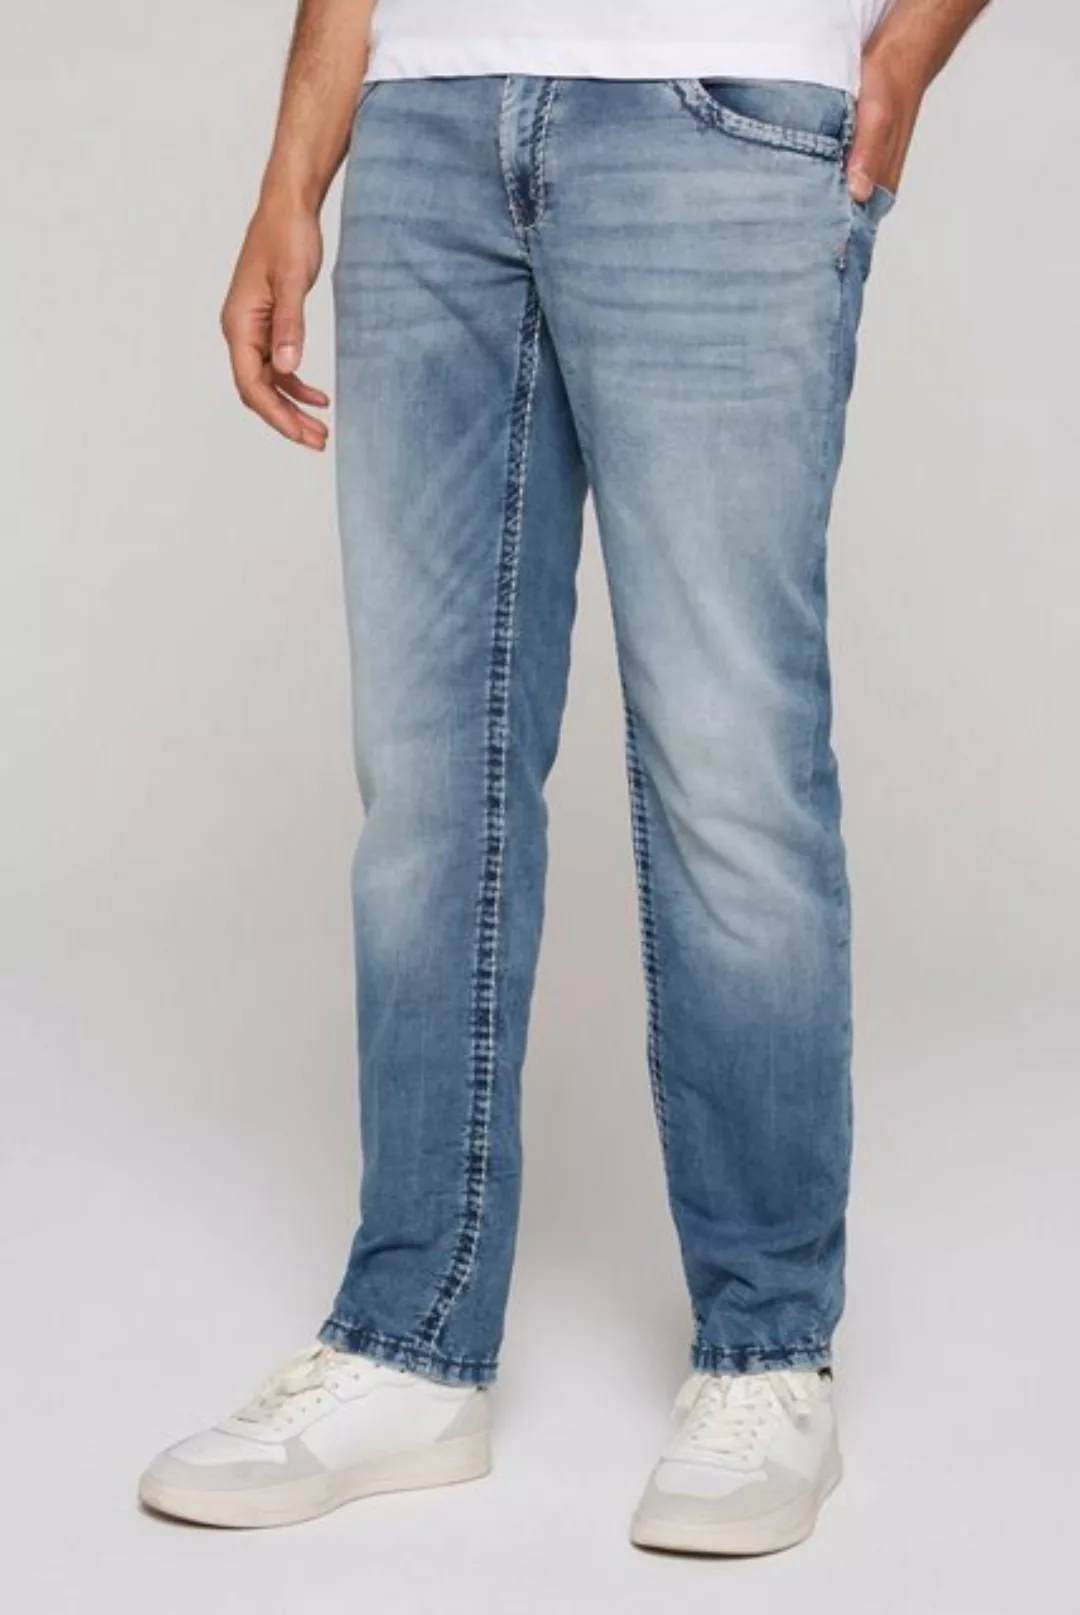 CAMP DAVID Comfort-fit-Jeans mit zwei Leibhöhen günstig online kaufen